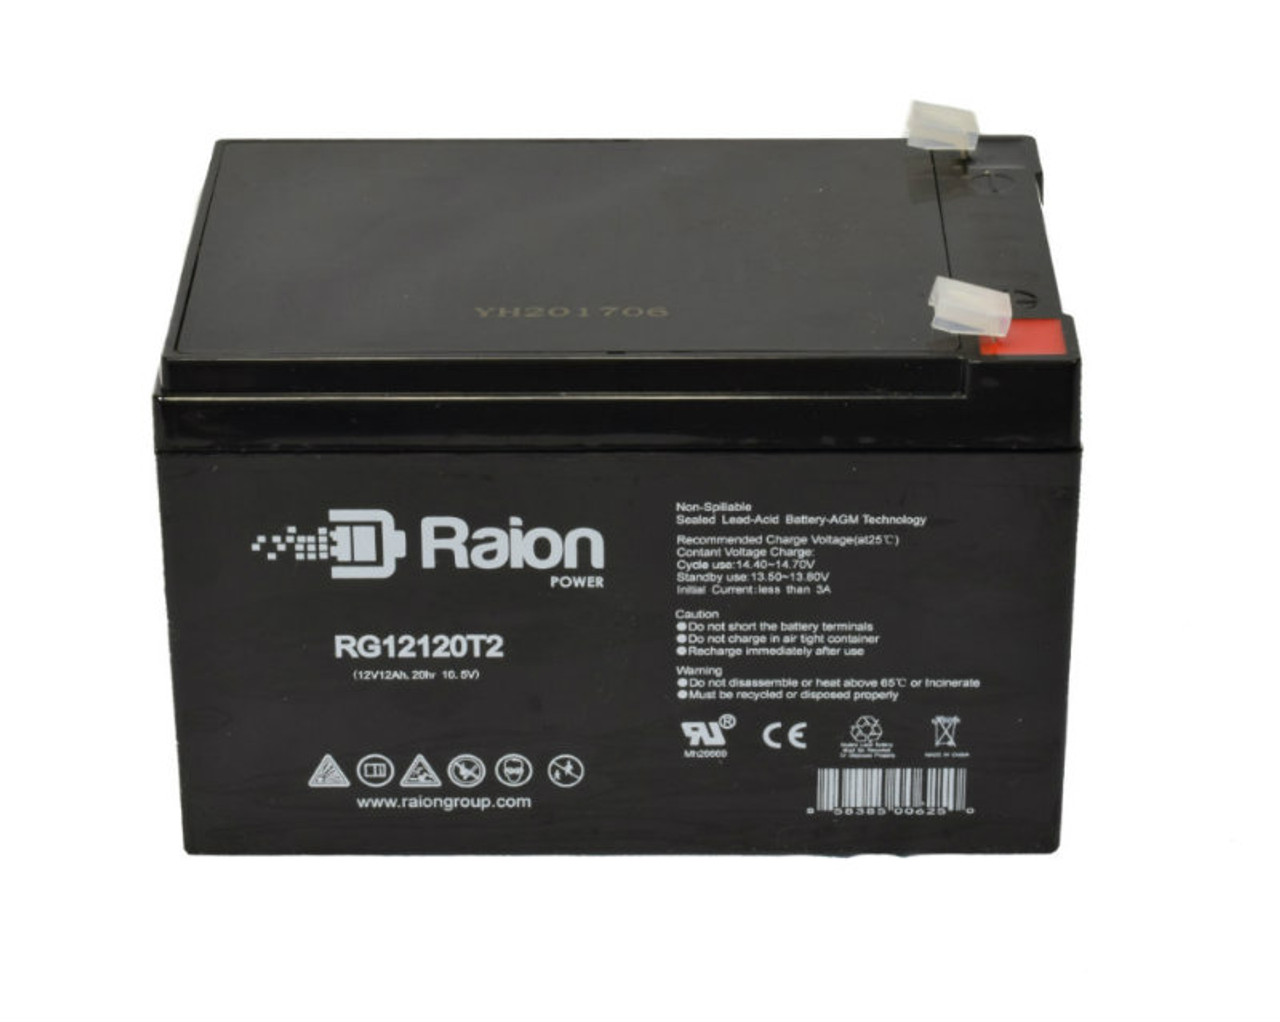 Raion Power RG12120T2 SLA Battery for RYTON RT12120